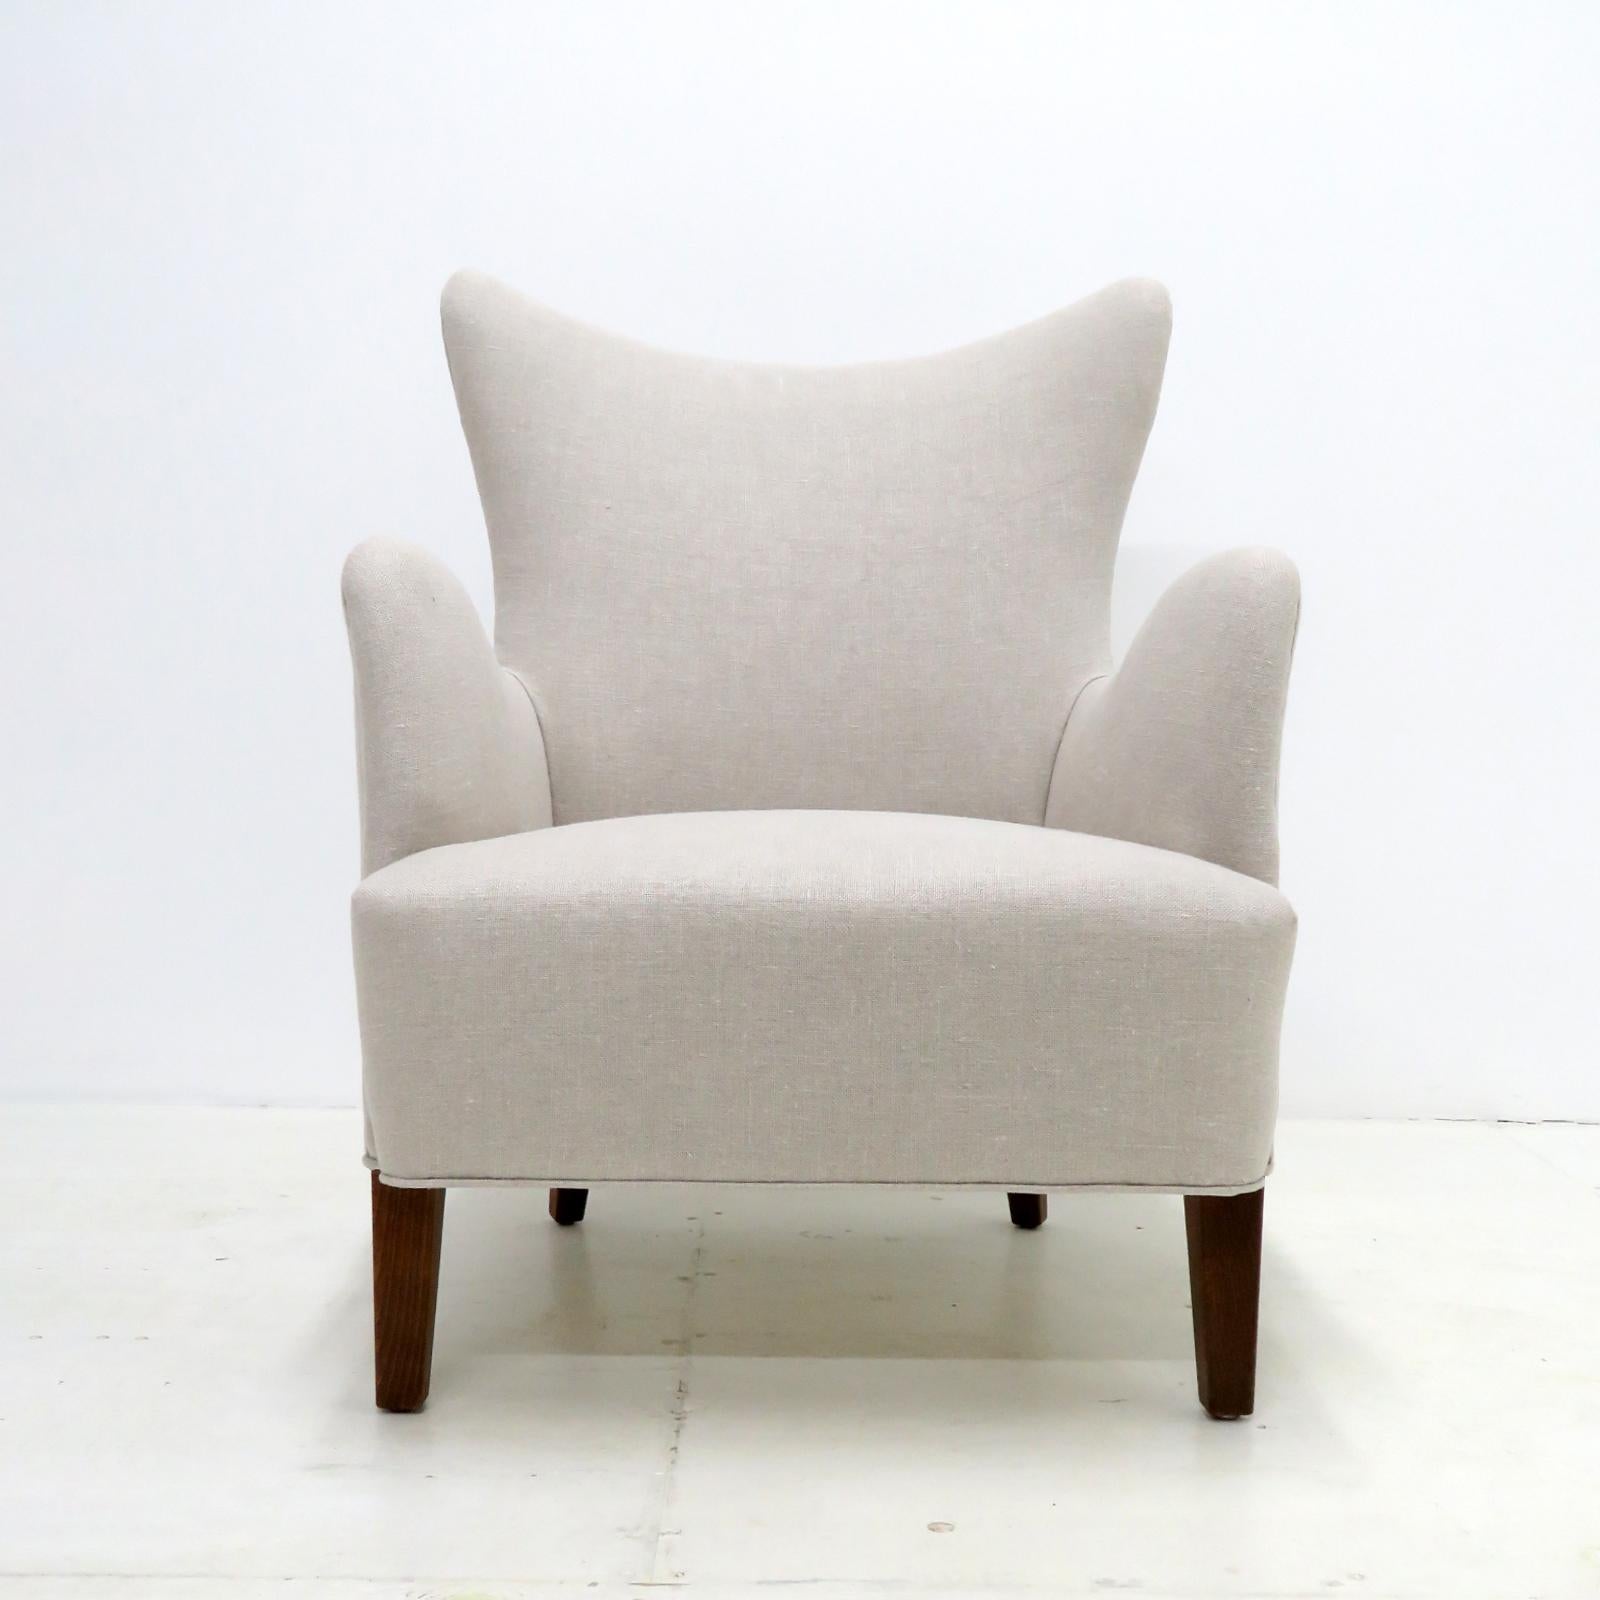 Magnifique chaise longue moderne danoise conçue par Frode Holm pour Illums Bolighus, années 1940, pieds en hêtre teinté foncé avec un tissu en lin nouvellement tapissé. Marqué d'une étiquette en papier.